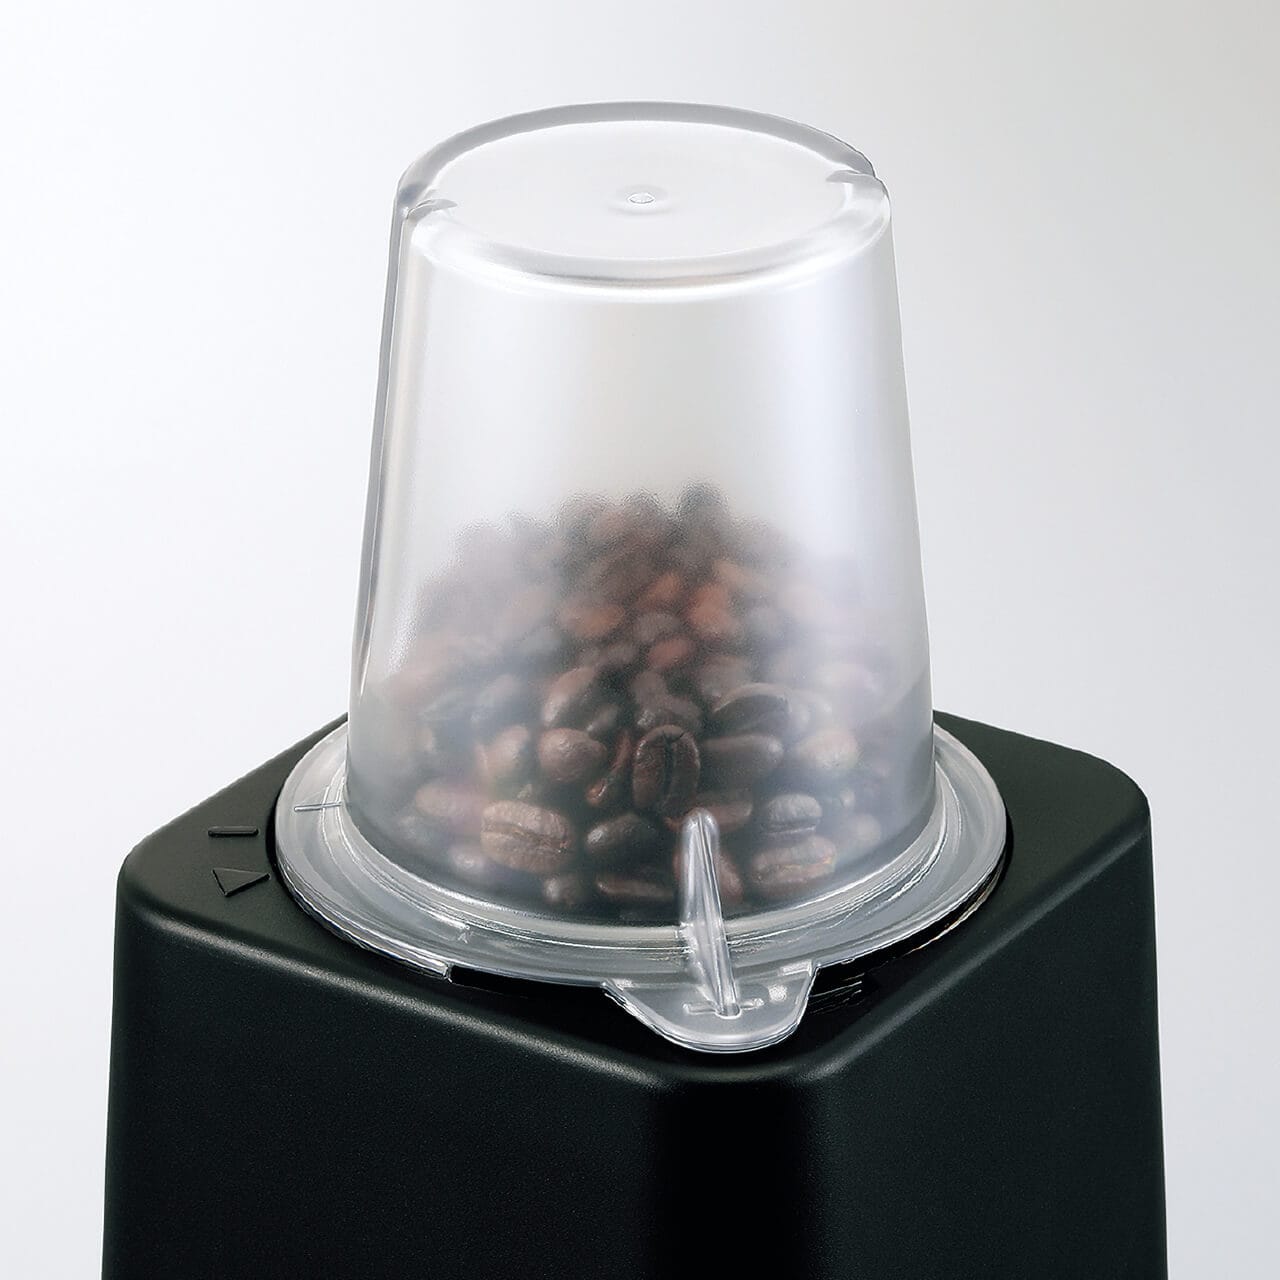 コーヒー豆を挽くときには、ガラス容器を外してミル容器に変更します